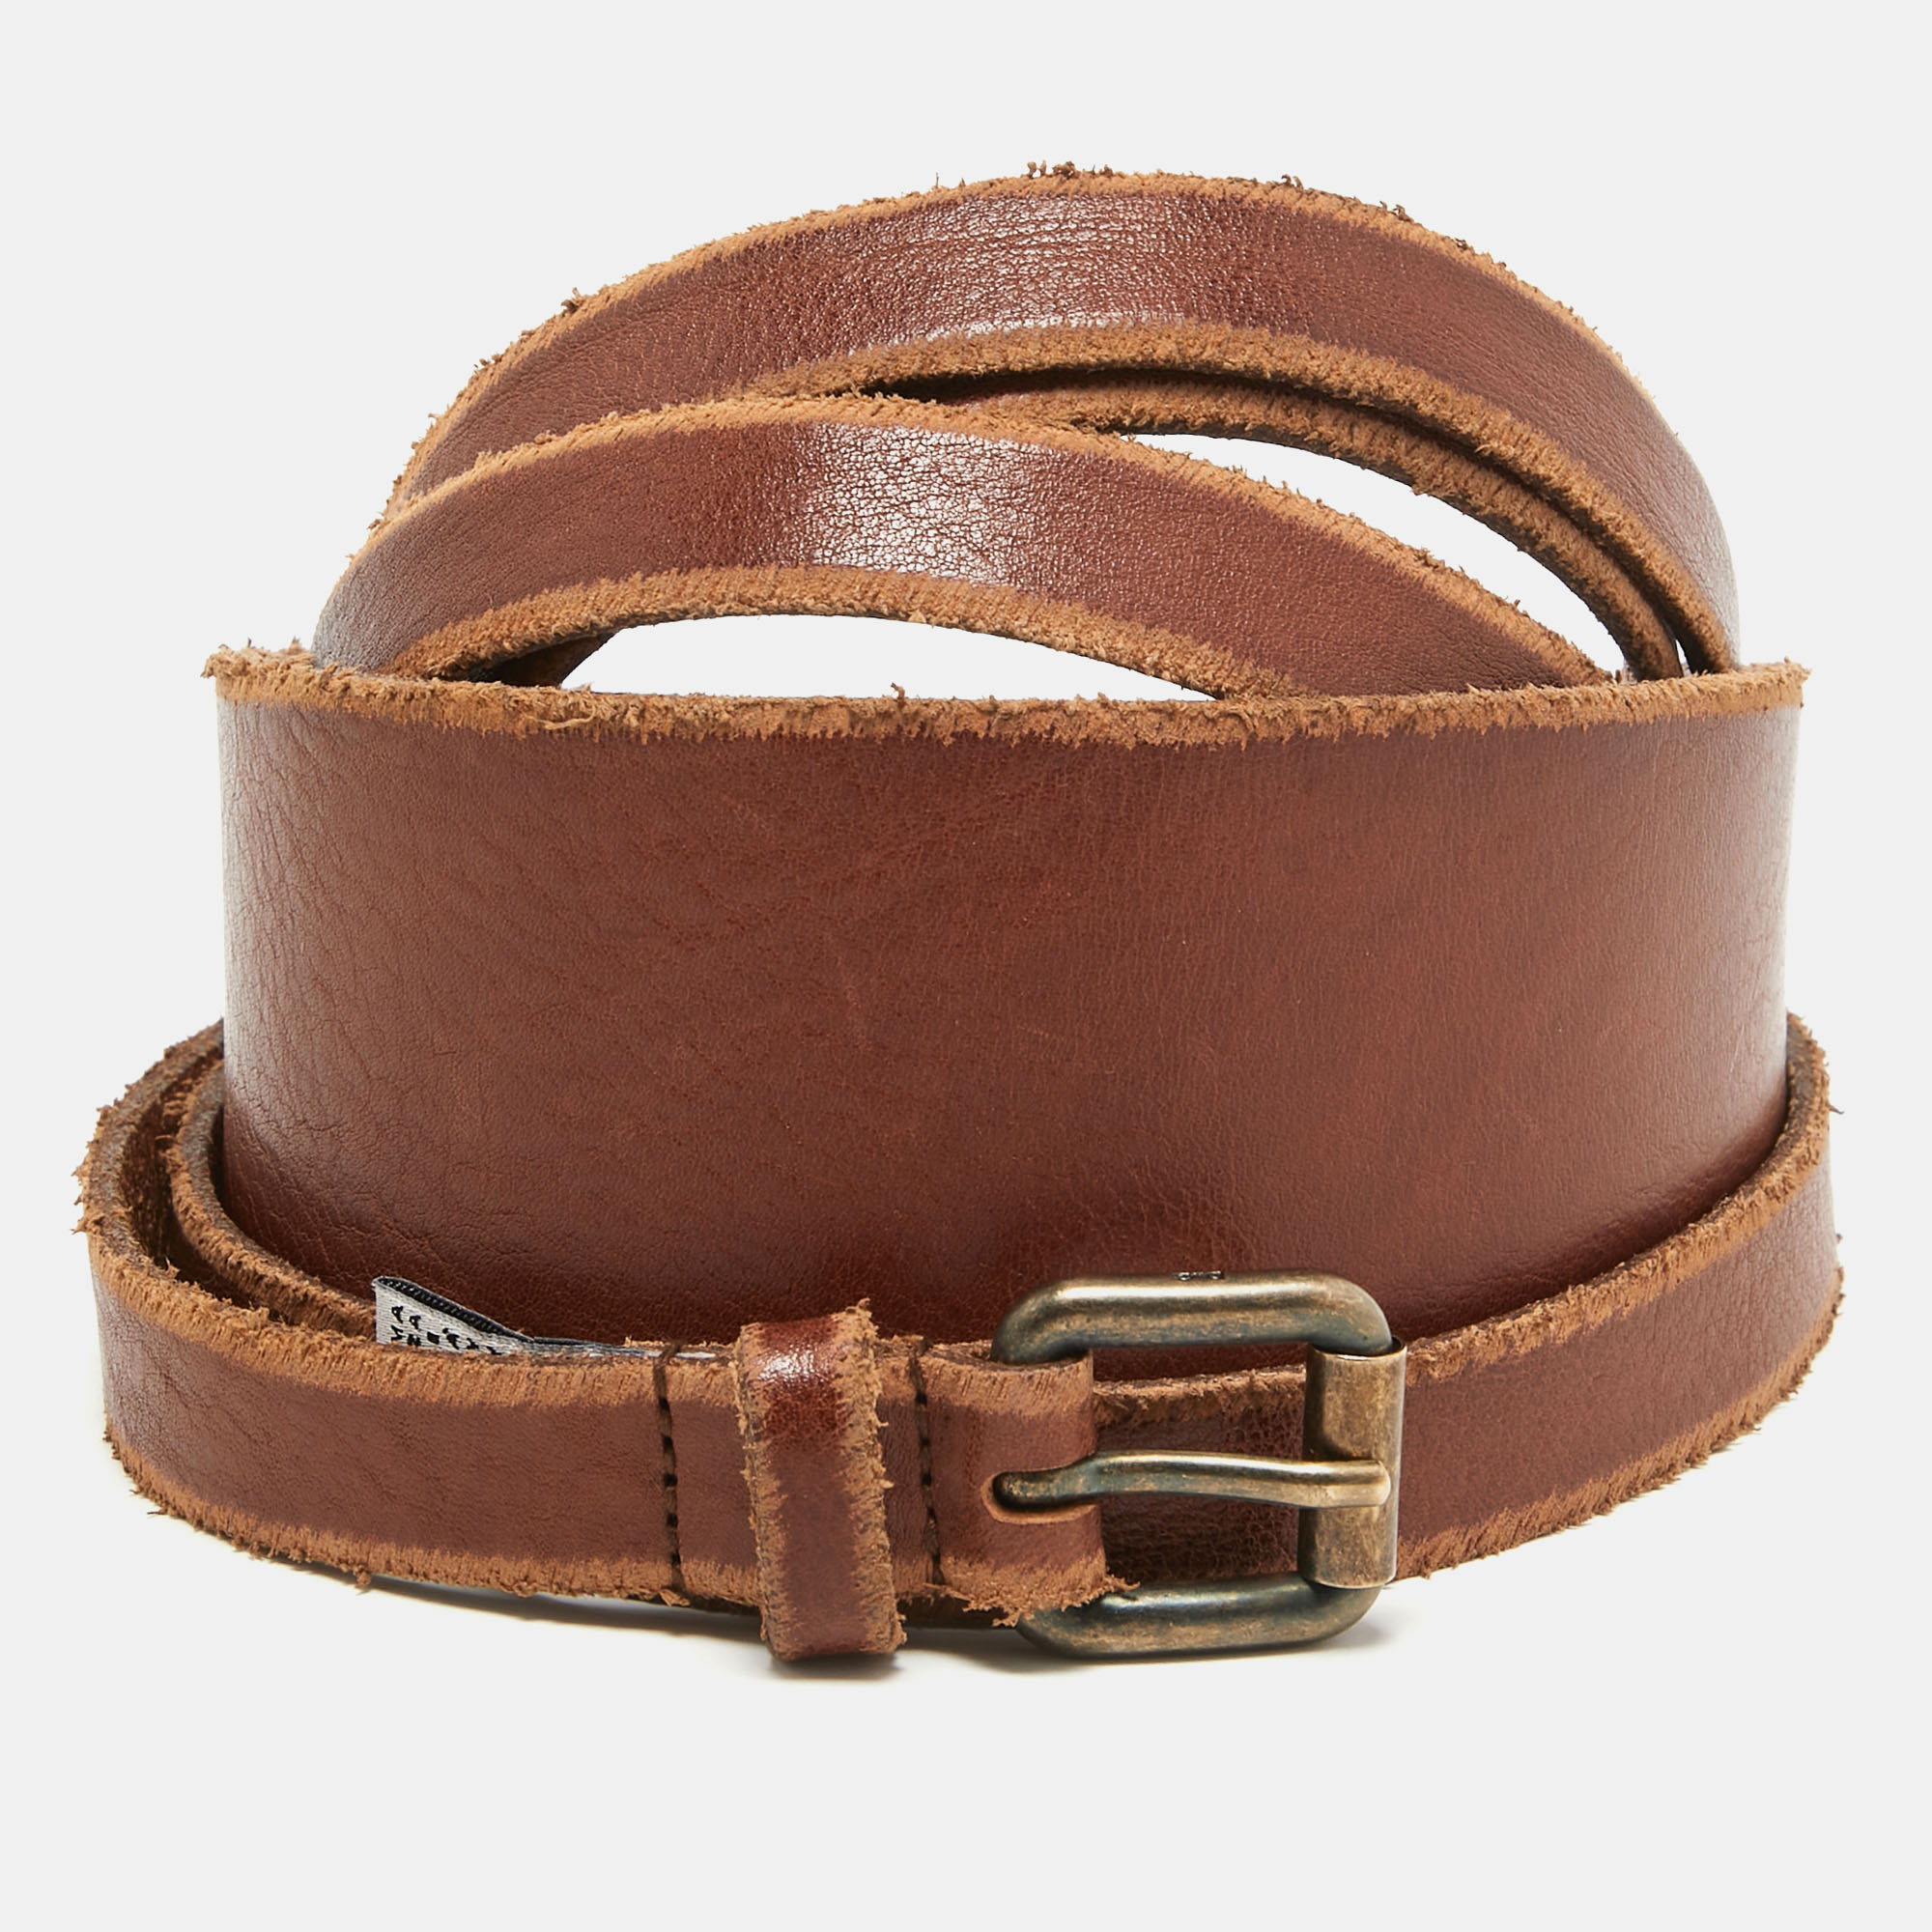 D&g brown leather wrap around waist belt 100 cm